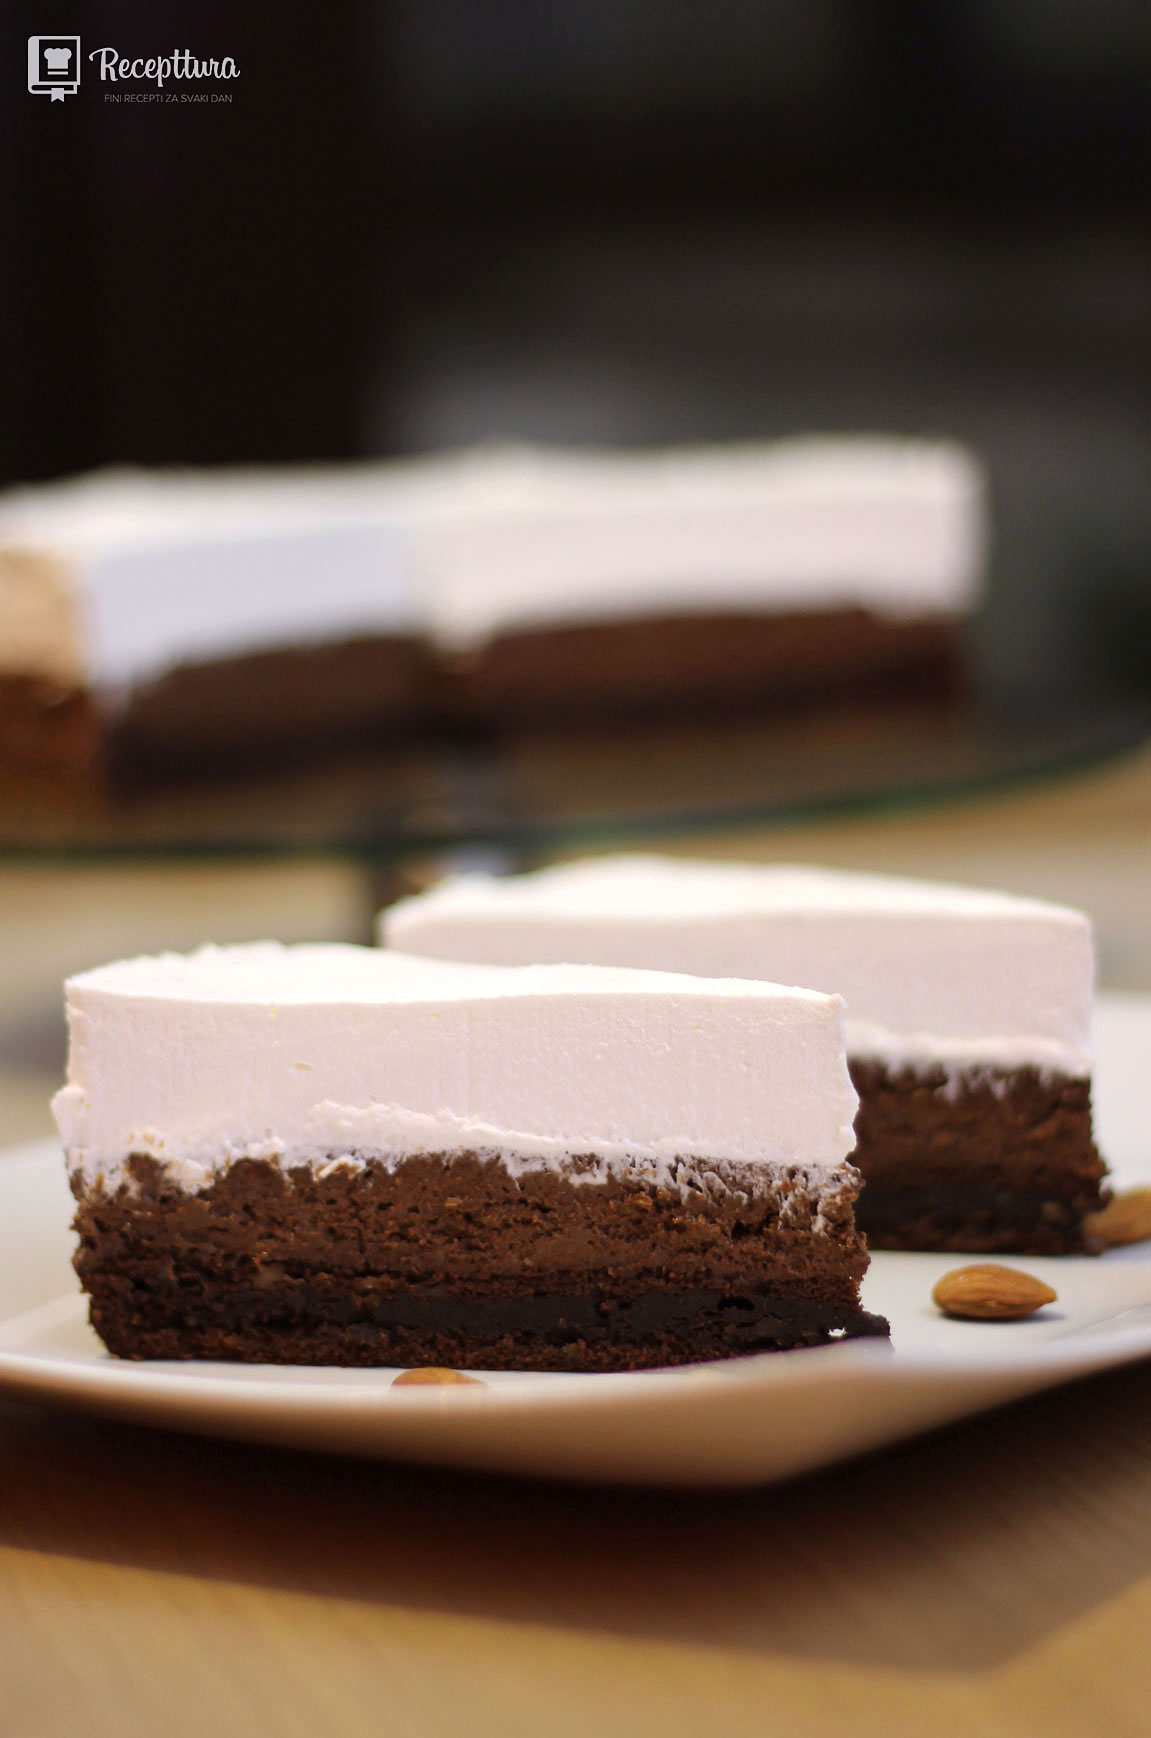 Crna torta ukusna je slastica od tri sloja s jednim malim trikom koji jako olakšava njezinu izradu.